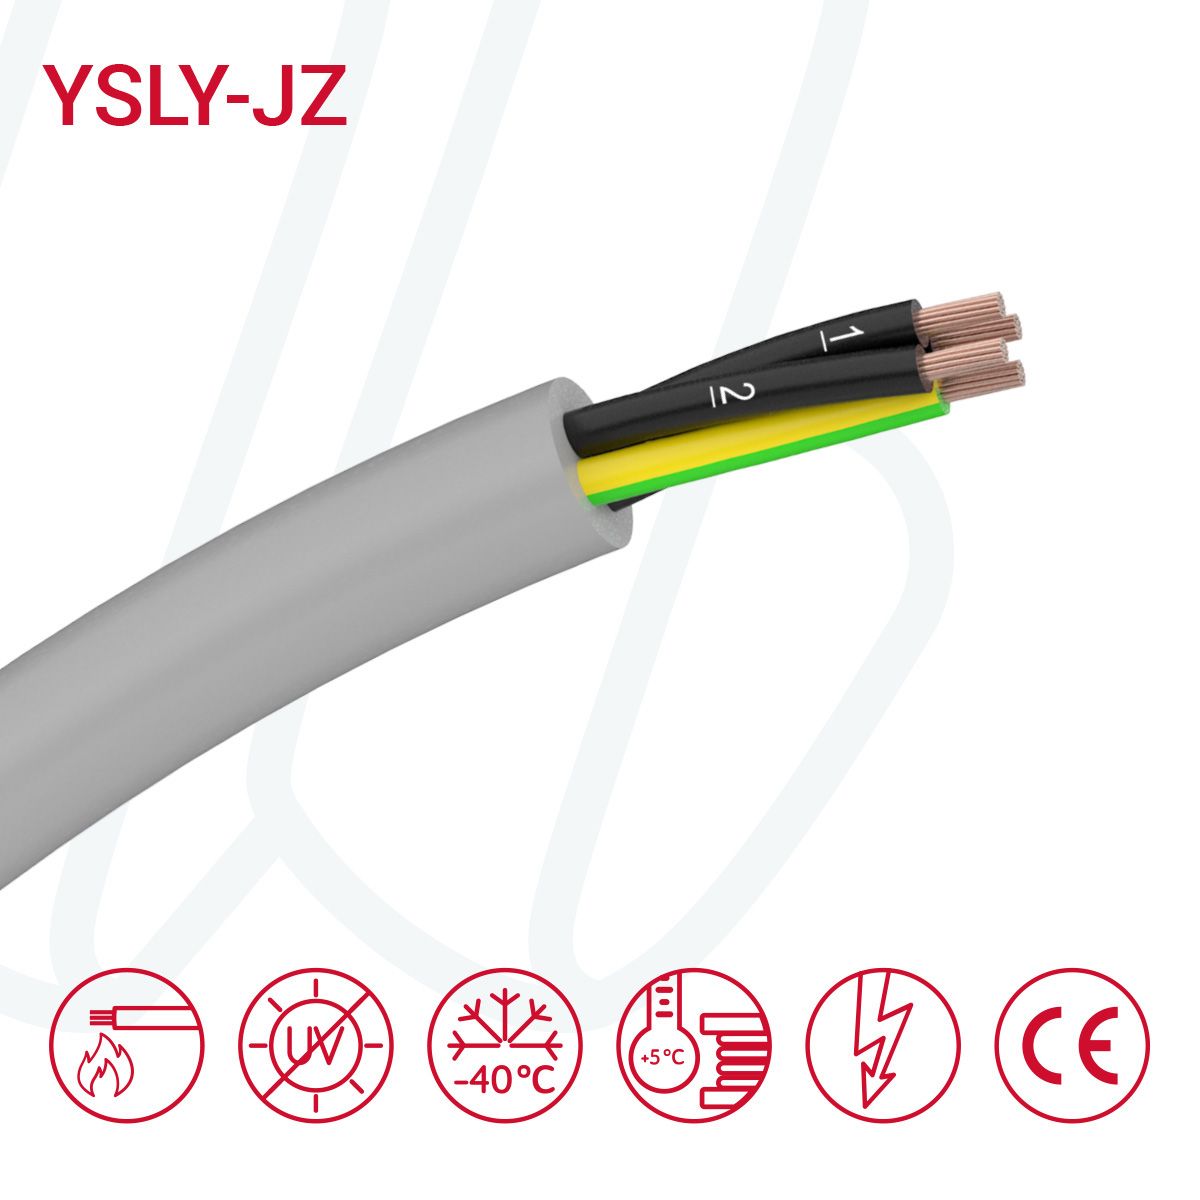 Кабель YSLY-JZ 14X1 сірий, 14, 1.0